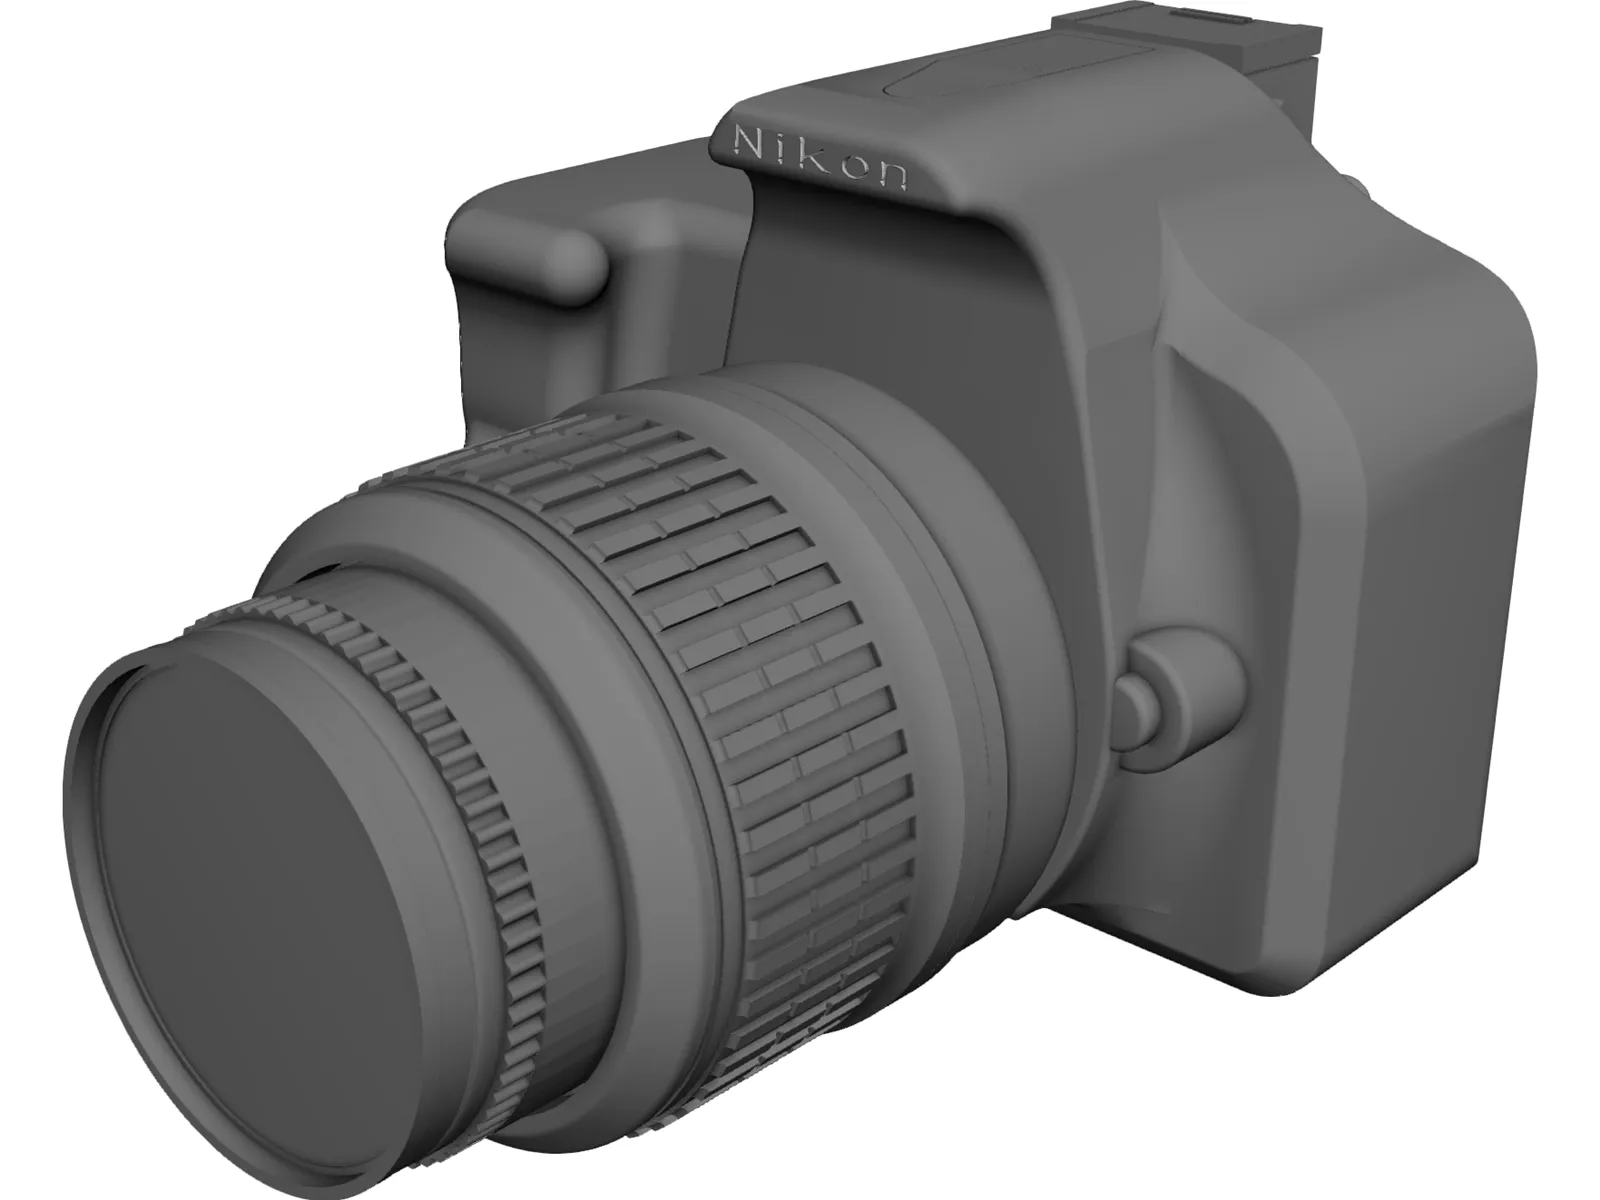 Nikon D5200 3D Model